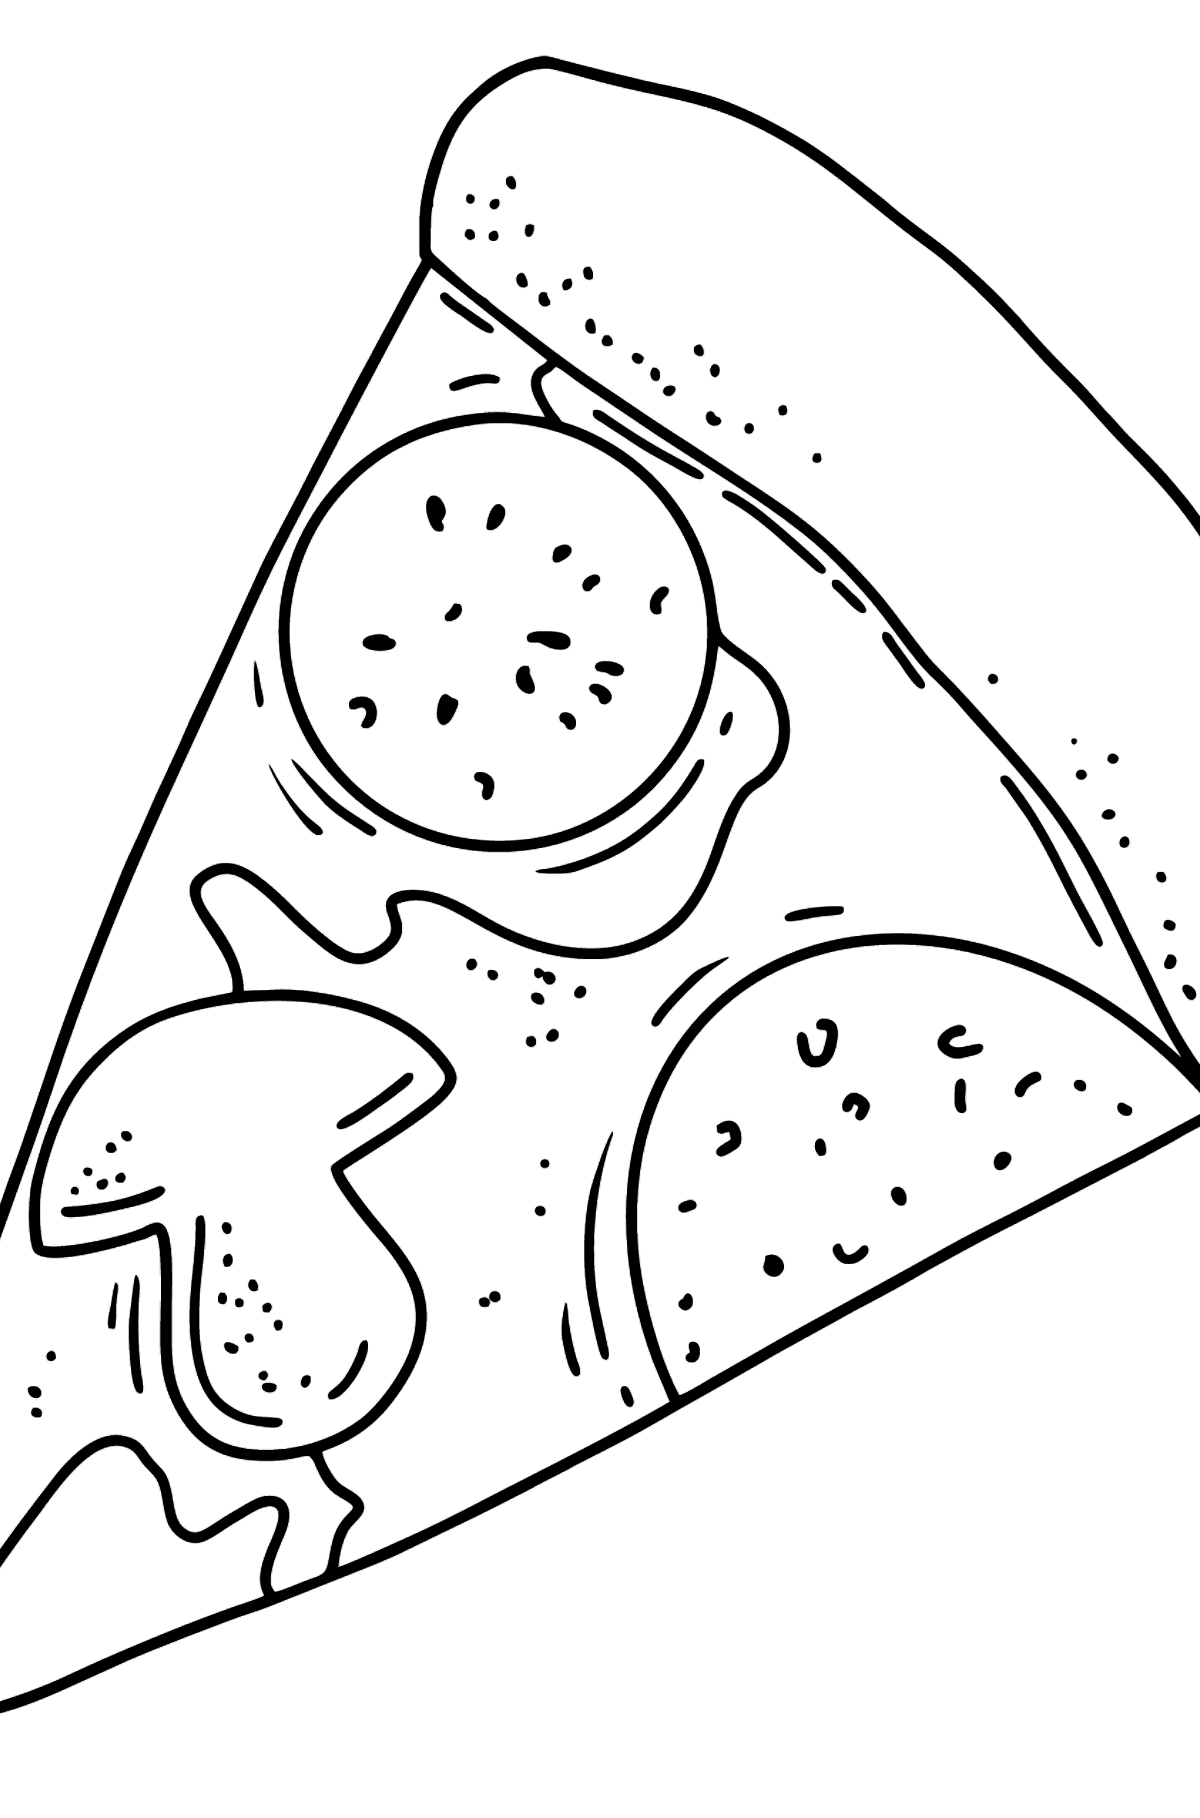 Coloriage - Pizza au salami et champignons - Coloriages pour les Enfants